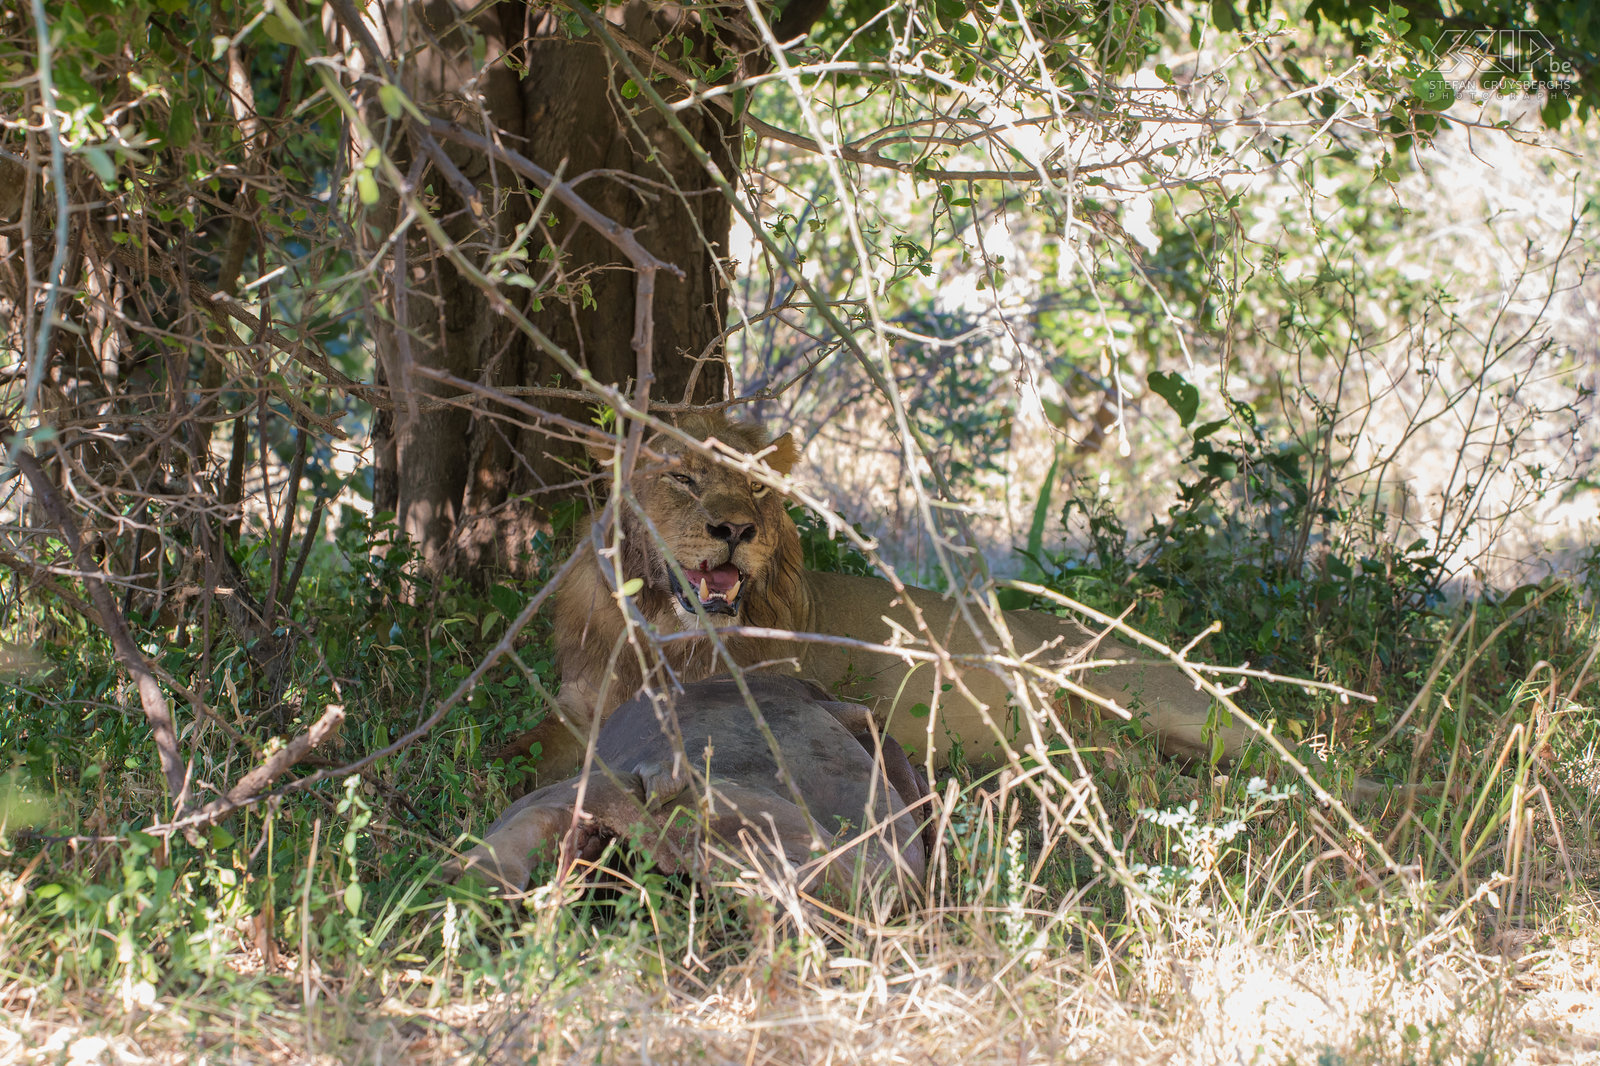 South Luangwa - Leeuw met gedood nijlpaard De vier mannetjes leeuwen hadden ‘s nachts een jong nijlpaard gedood, dit onder een boom gesleurd en bijna helemaal opgepeuzeld. Stefan Cruysberghs